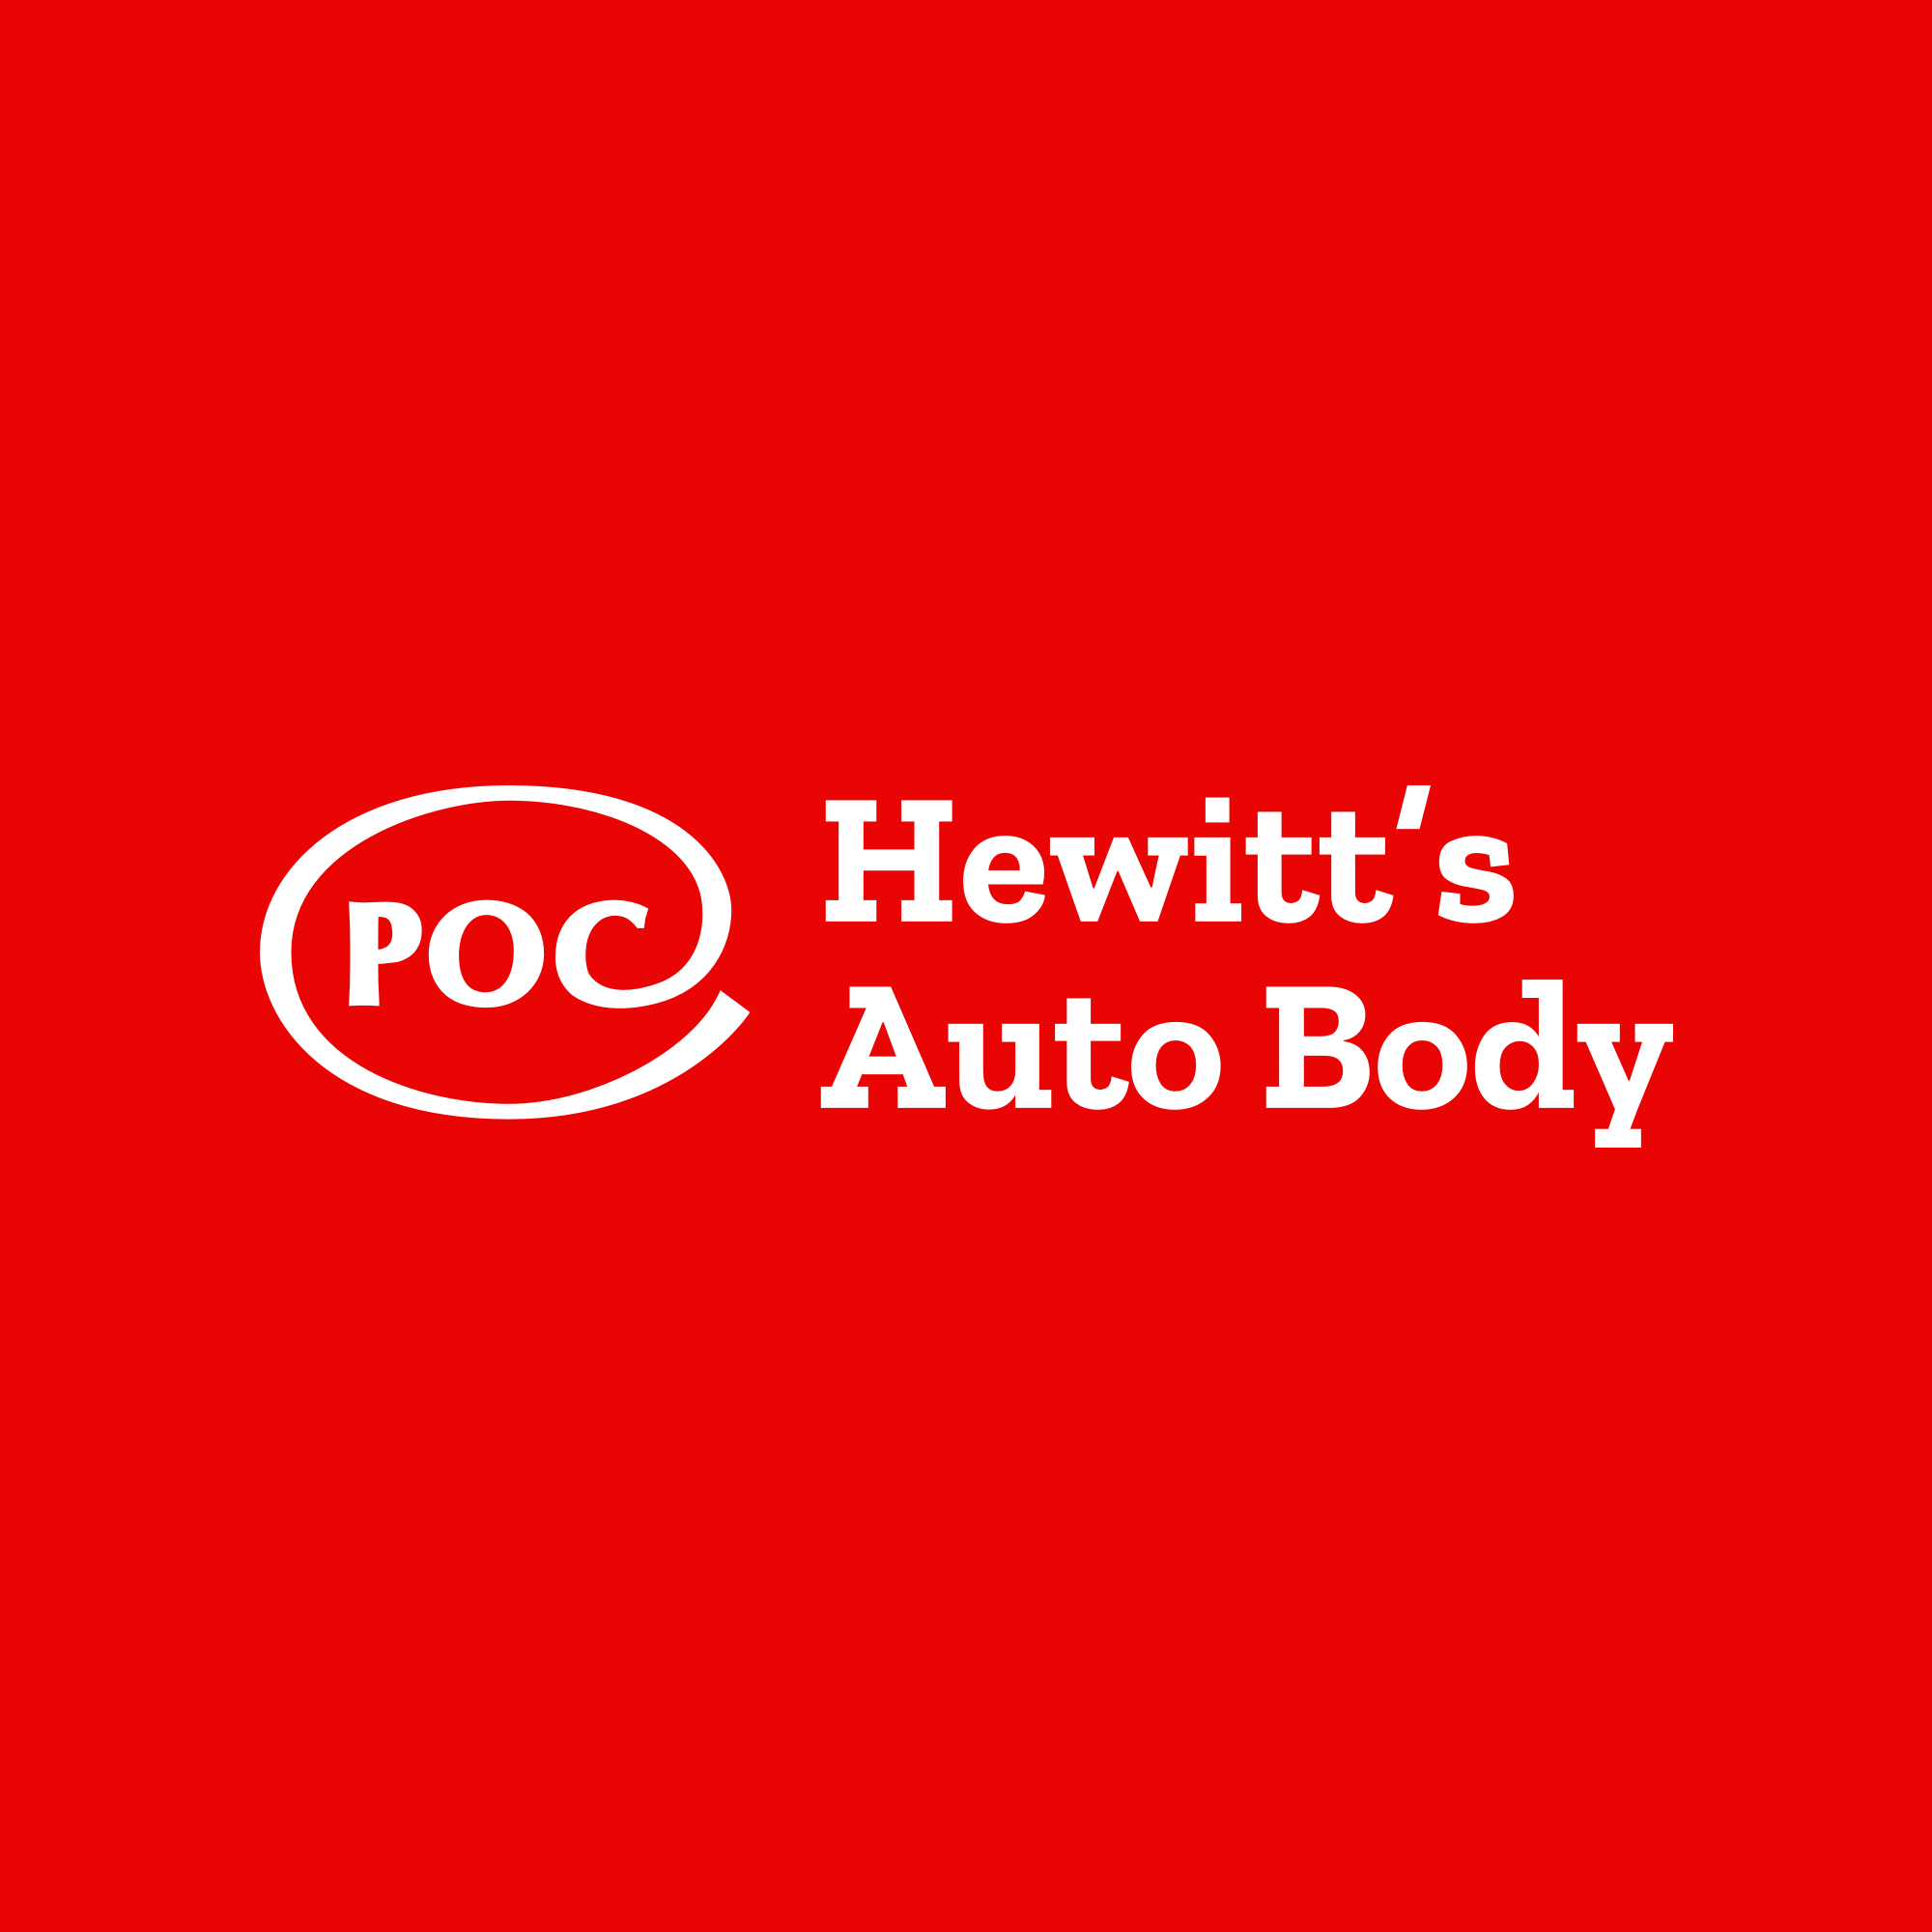 Hewitt's Auto Body - POC Collision